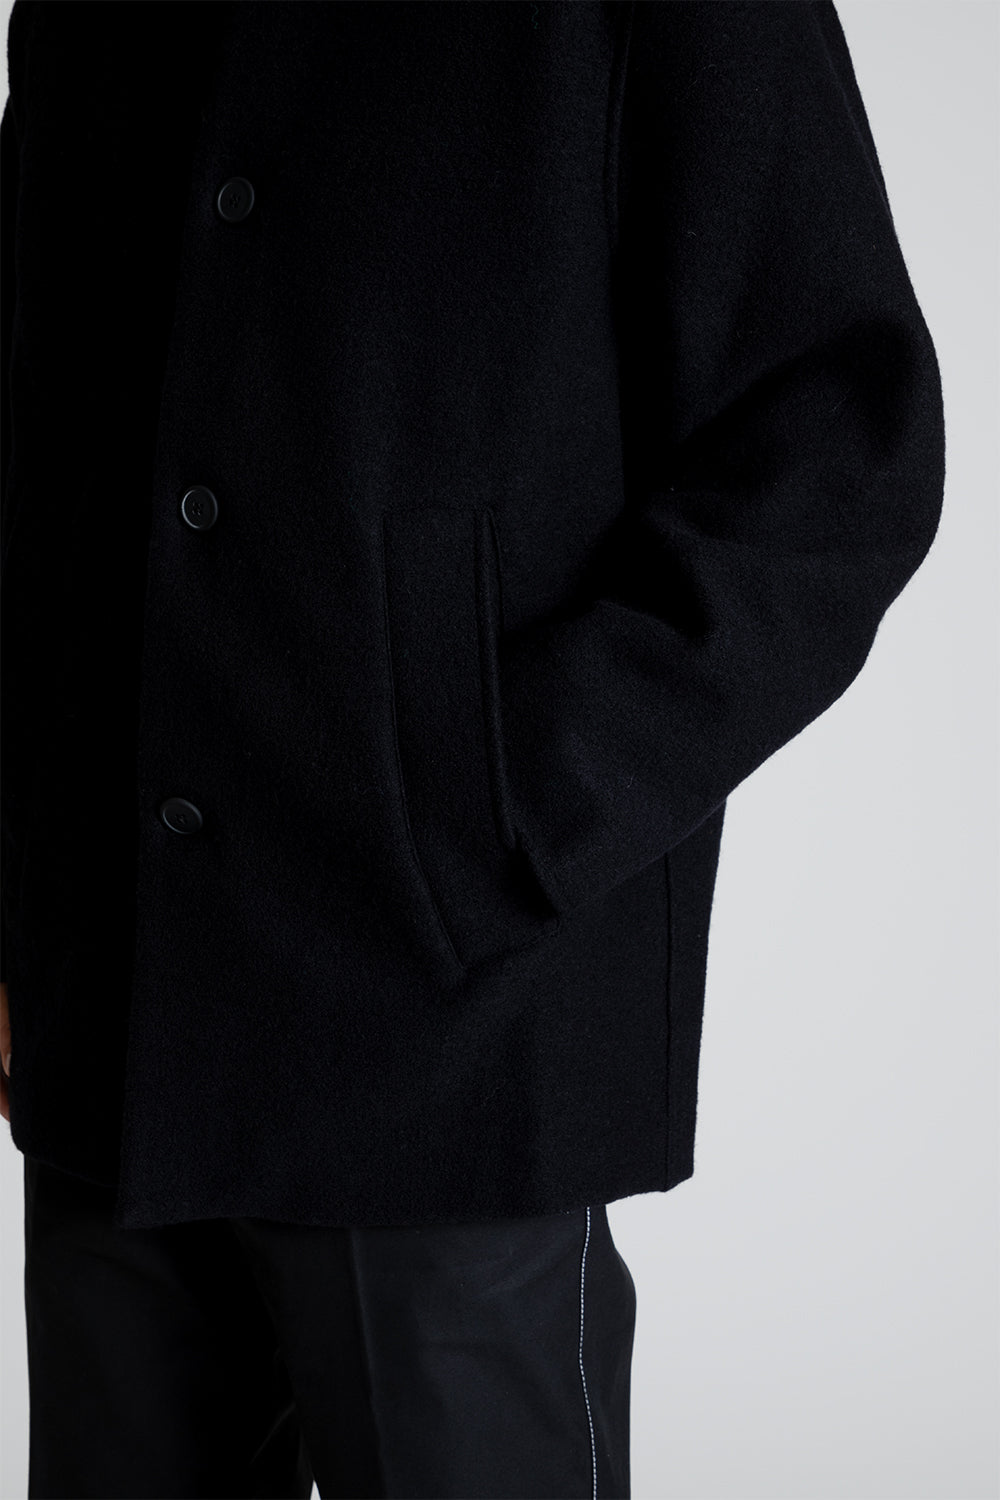 Schnayderman's Jacket Boiled Wool in Black